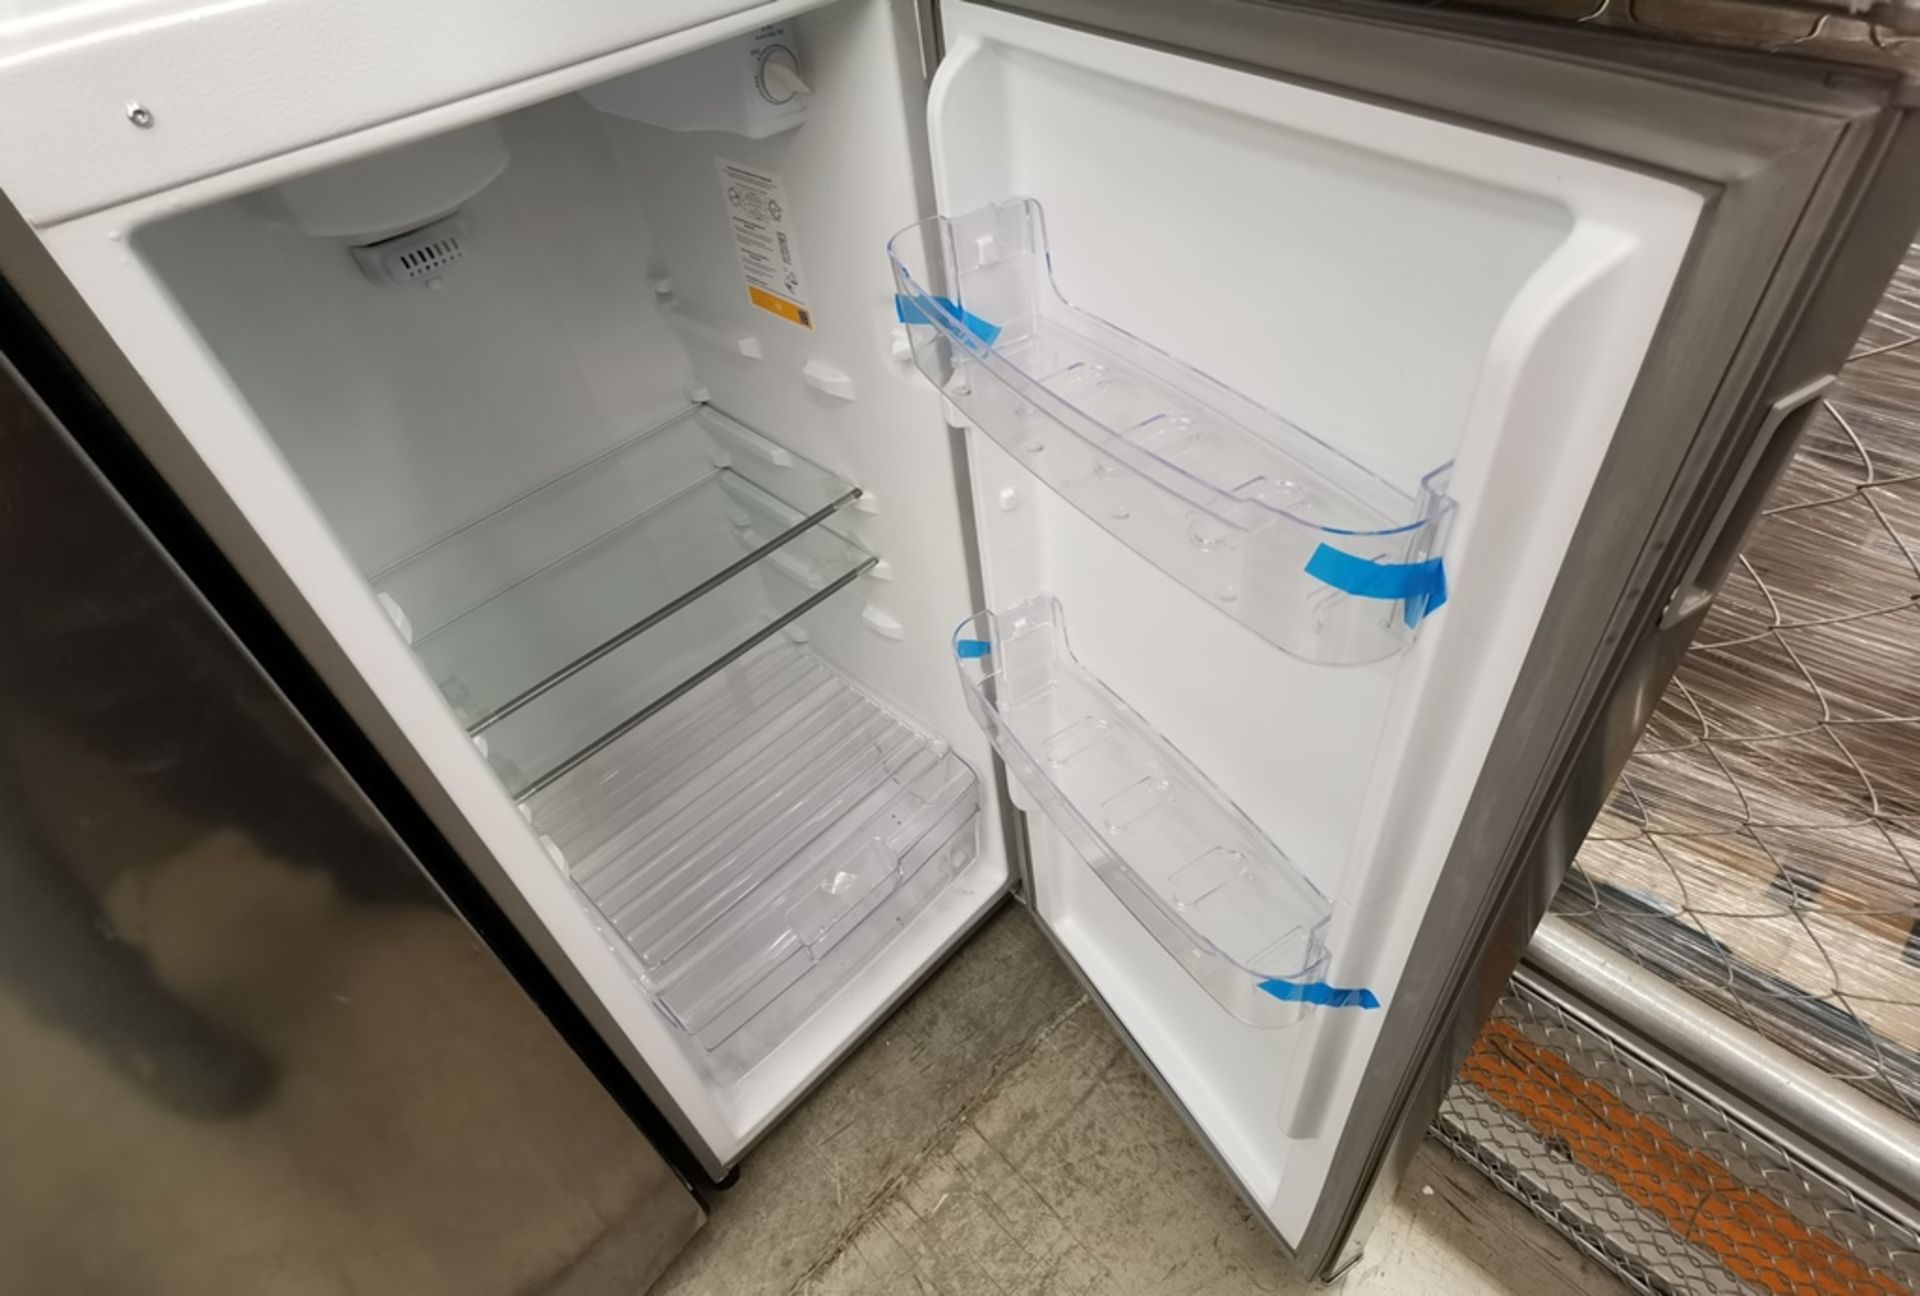 Lote De 2 Refrigeradores Contiene: 1 Refrigerador Marca Across, Modelo AT9007G03, Serie VRB1230980, - Image 6 of 16